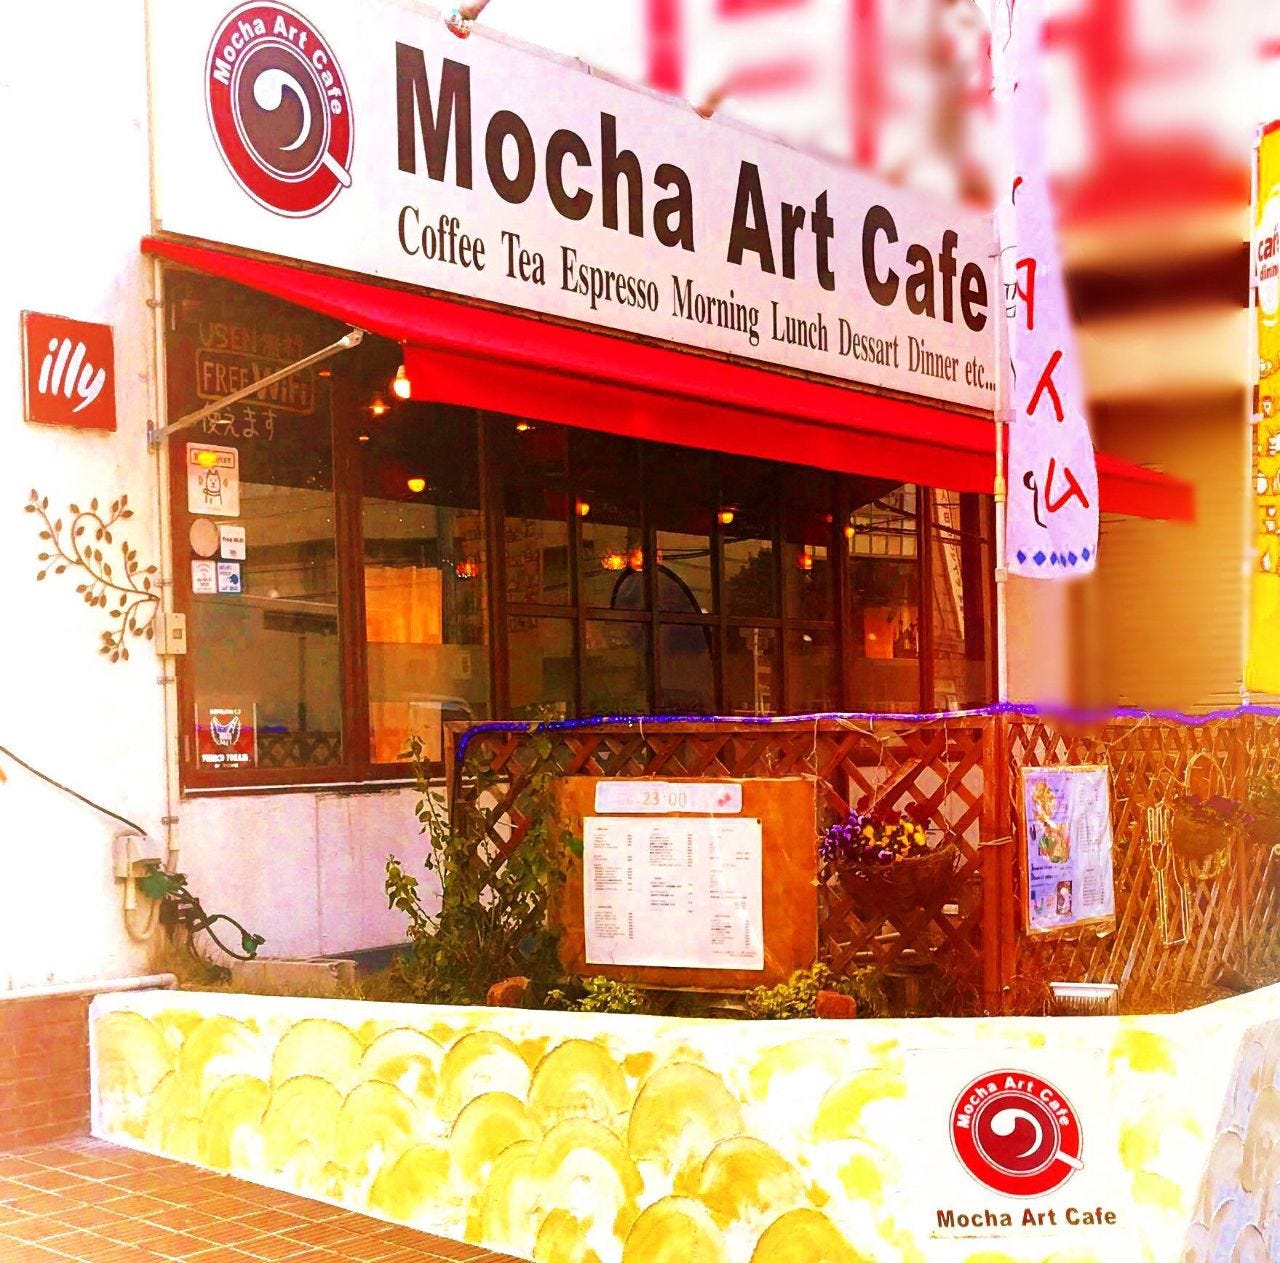 Mocha Art Cafe